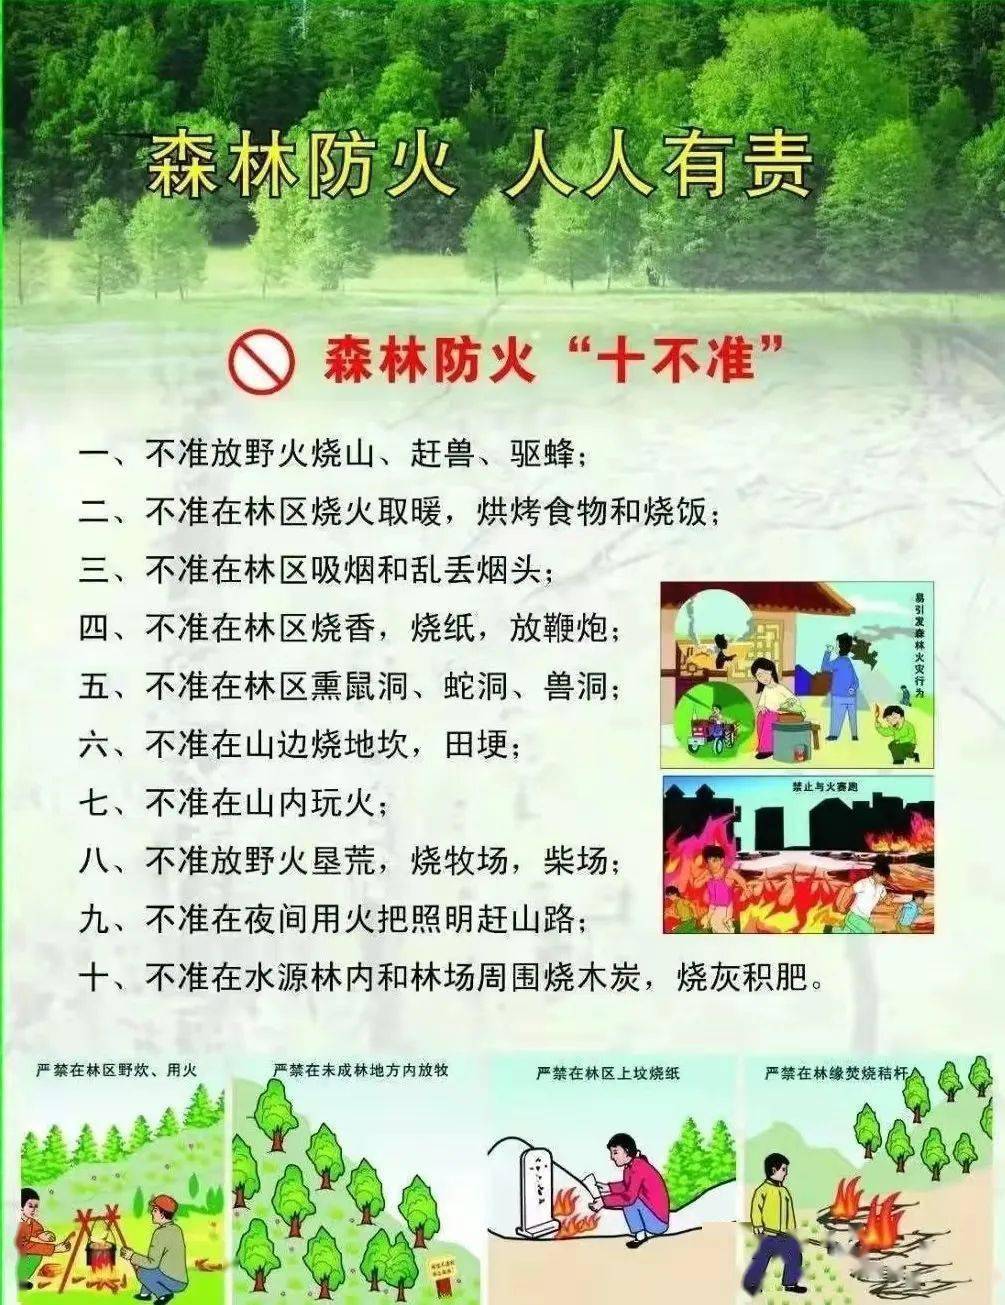 安全宣传森林防火人人有责临朐中学幼儿园森林防火安全知识宣传